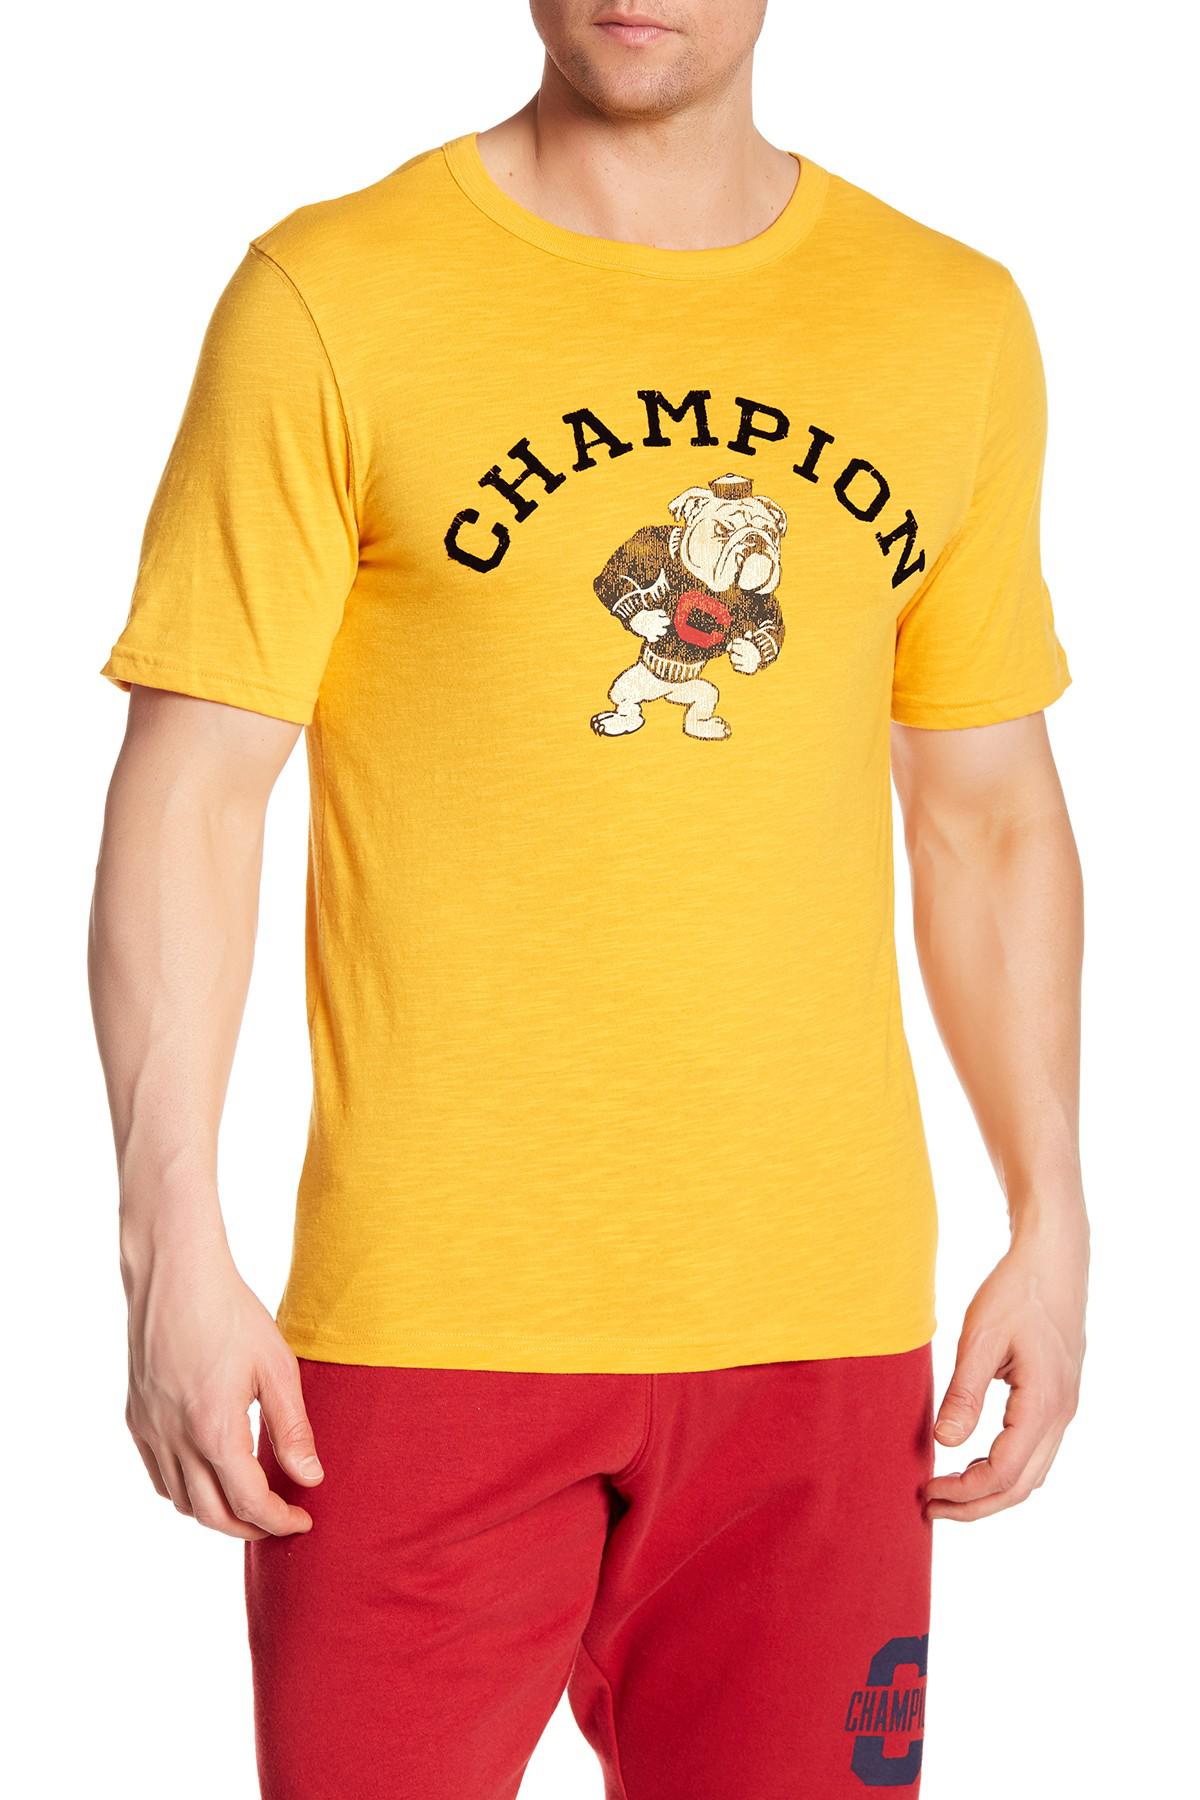 champion bulldog shorts